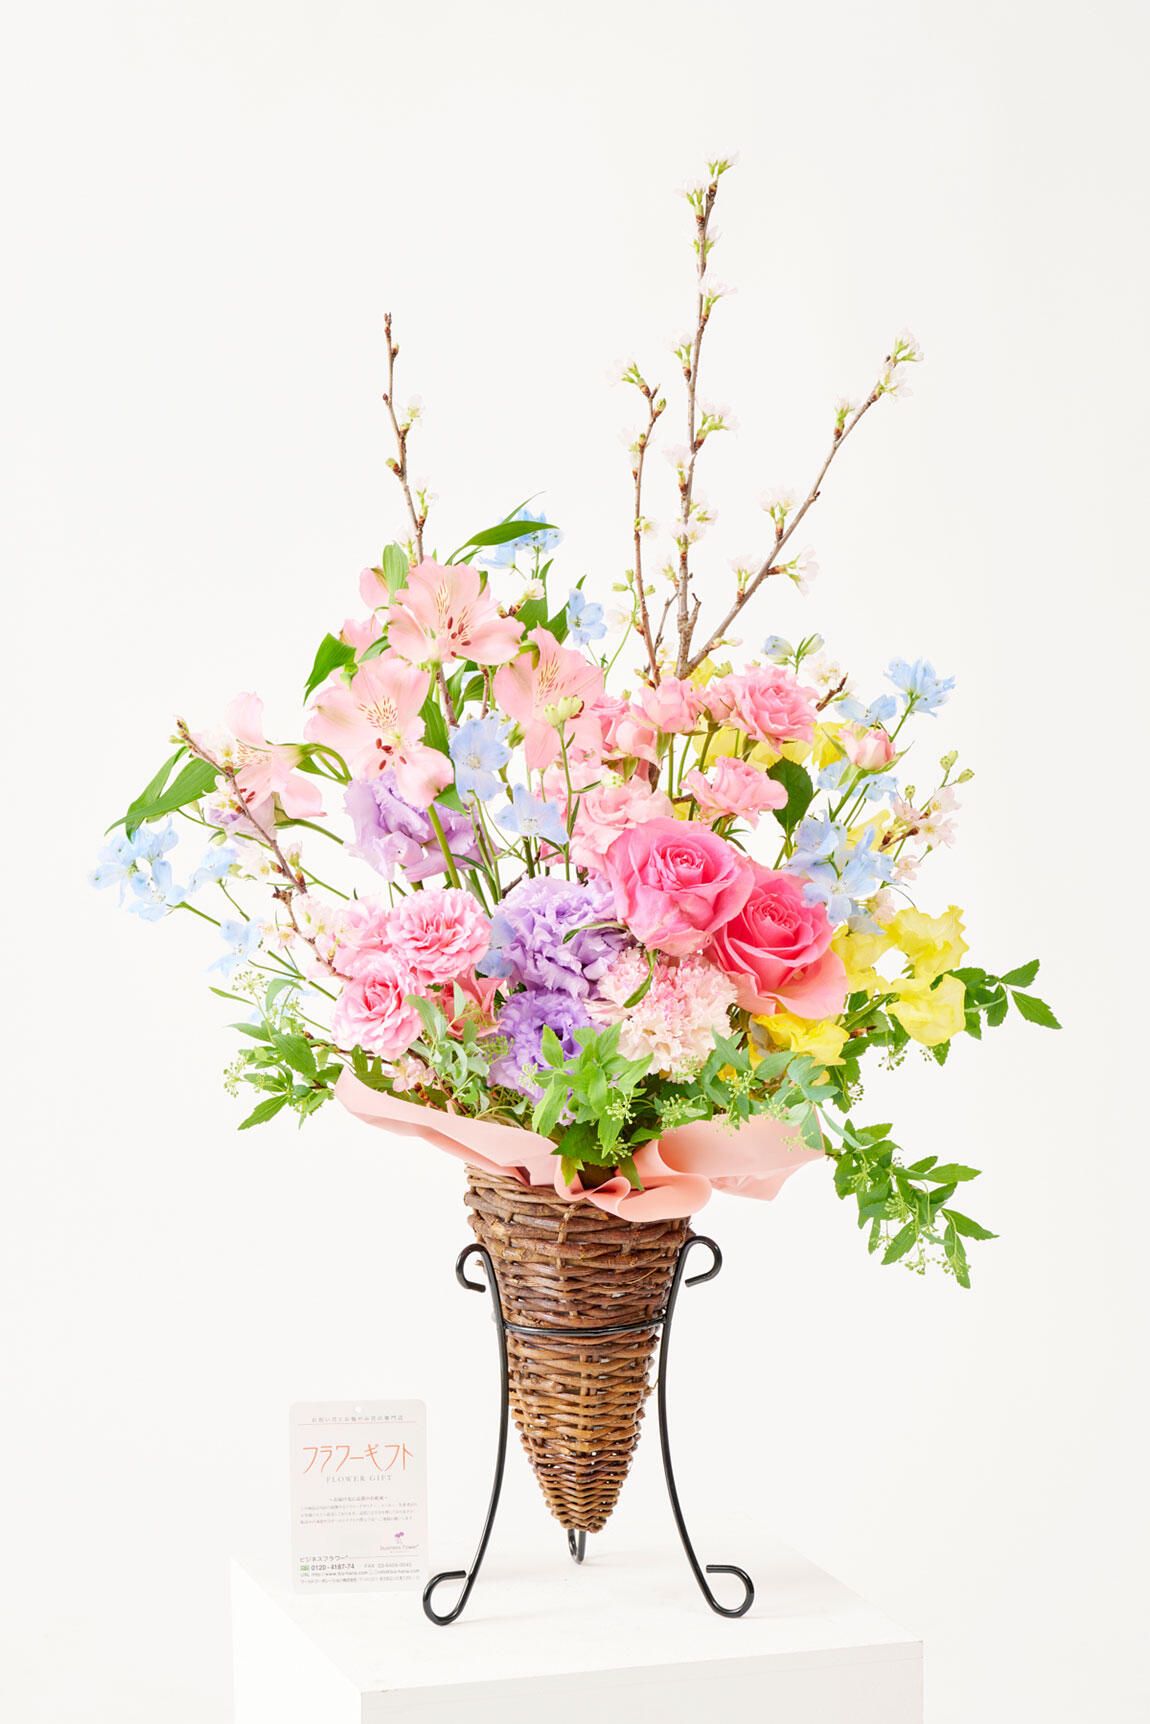 <p>桜を引き立てる色とりどりのお花のミックスデザインです。桜のアレンジメントフラワーは、個展祝いの贈答花としてはもちろん、開店祝い、移転祝い、飲食店などの周年祝いのお花の贈り物におすすめです。</p>